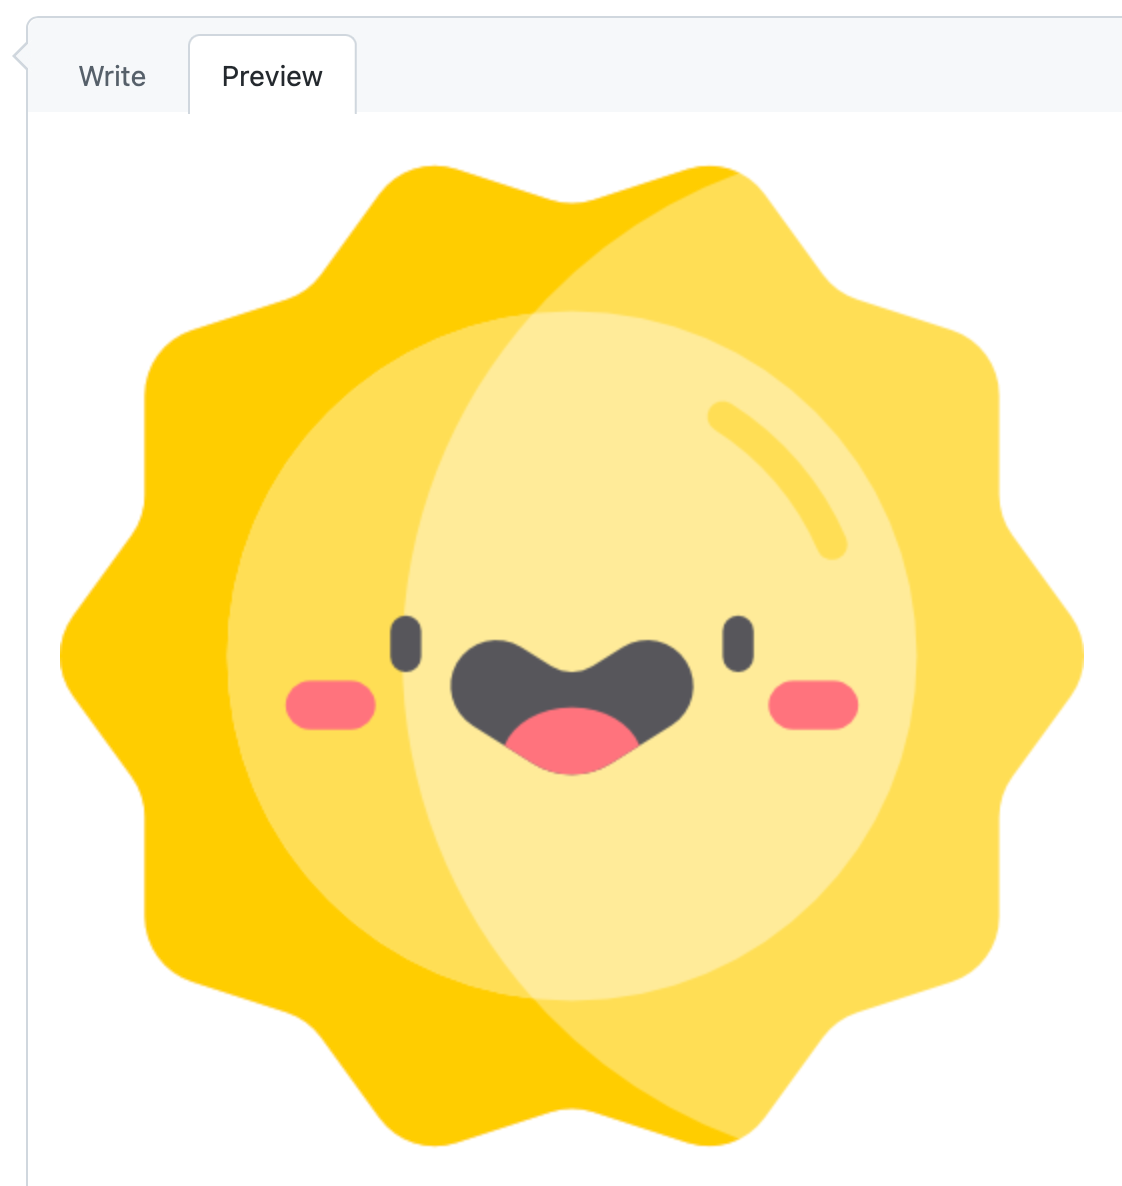 屏幕截图显示浅色模式下 GitHub 注释的“预览”选项卡。 一张微笑的太阳的图像填满了整个框。